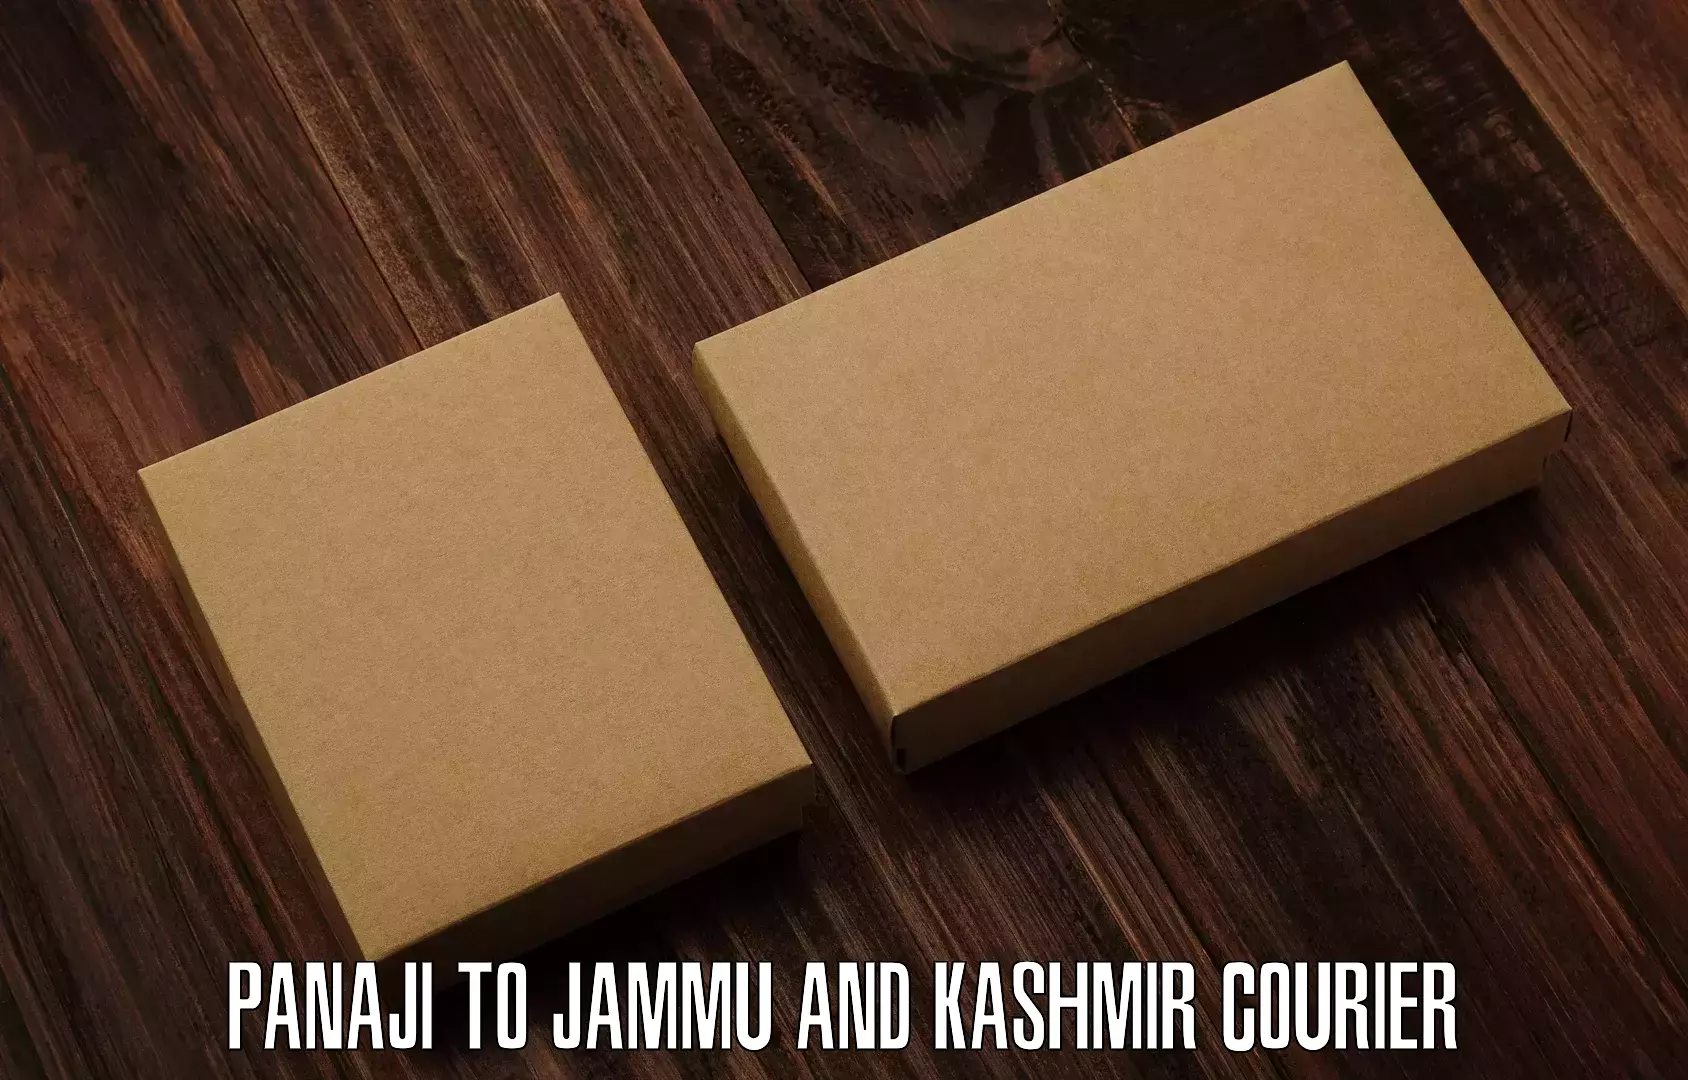 Logistics service provider Panaji to Jammu and Kashmir